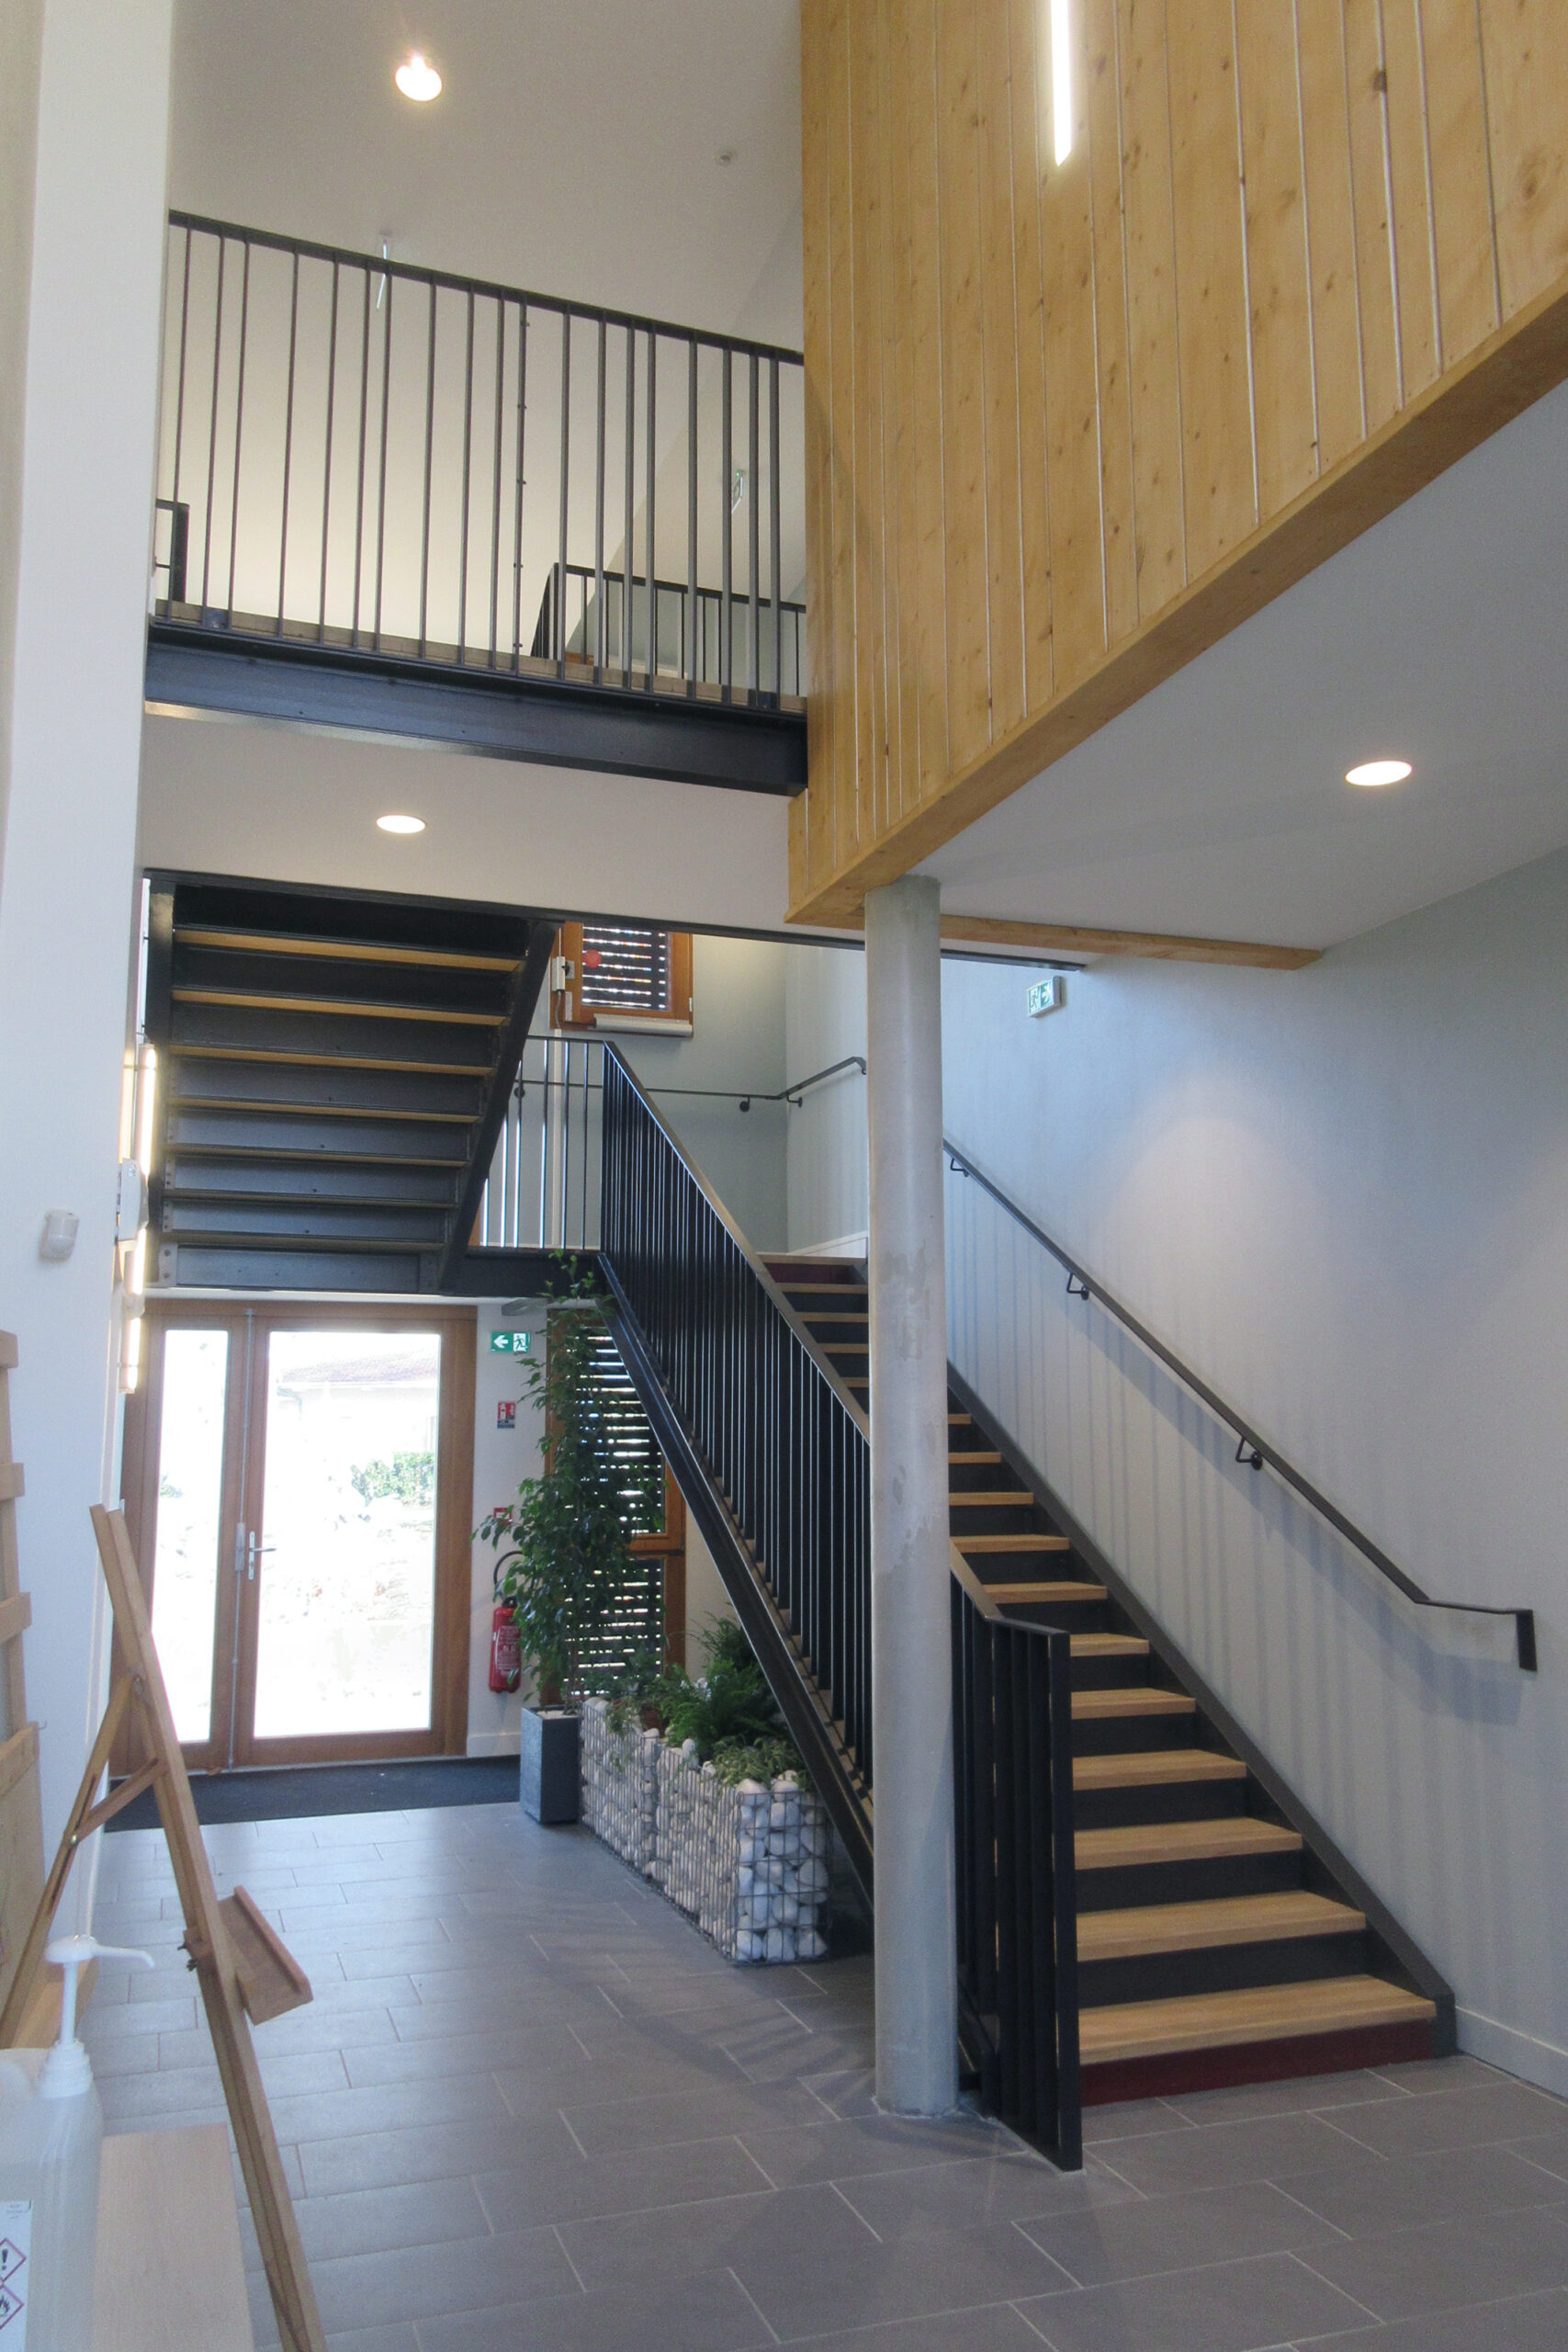 Hall d'entrée, escalier et coursive de liaison / Tratteggio architecture